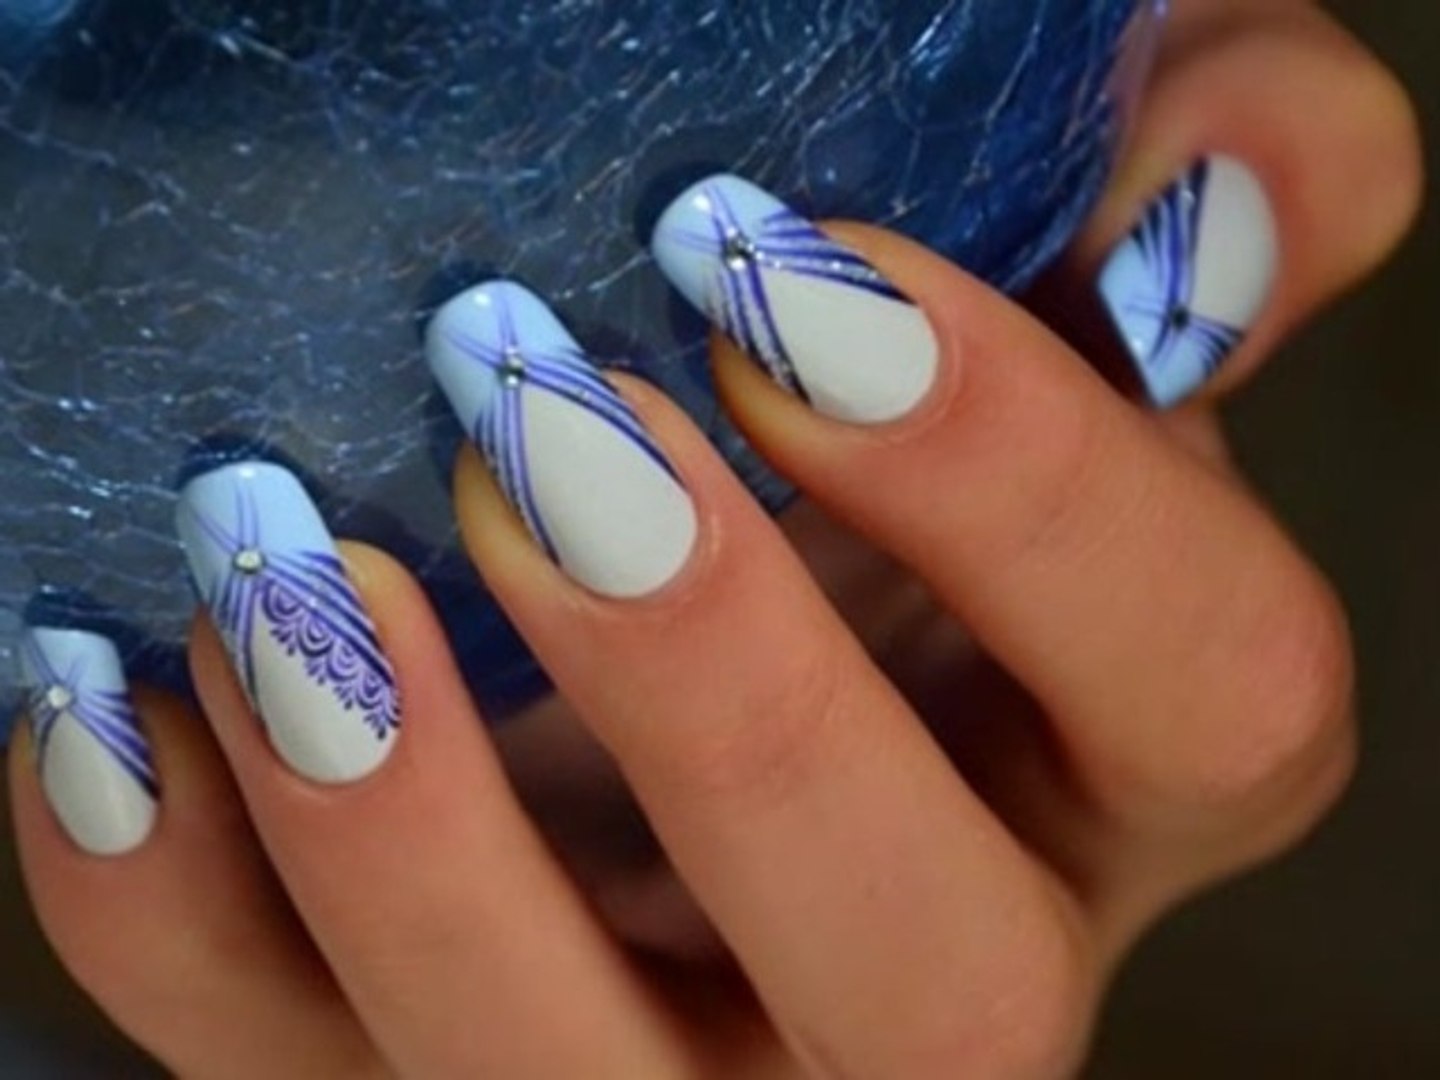 Sexy nails revisité : Tuto Nail art lignes croisées et dentelle - Vidéo  Dailymotion